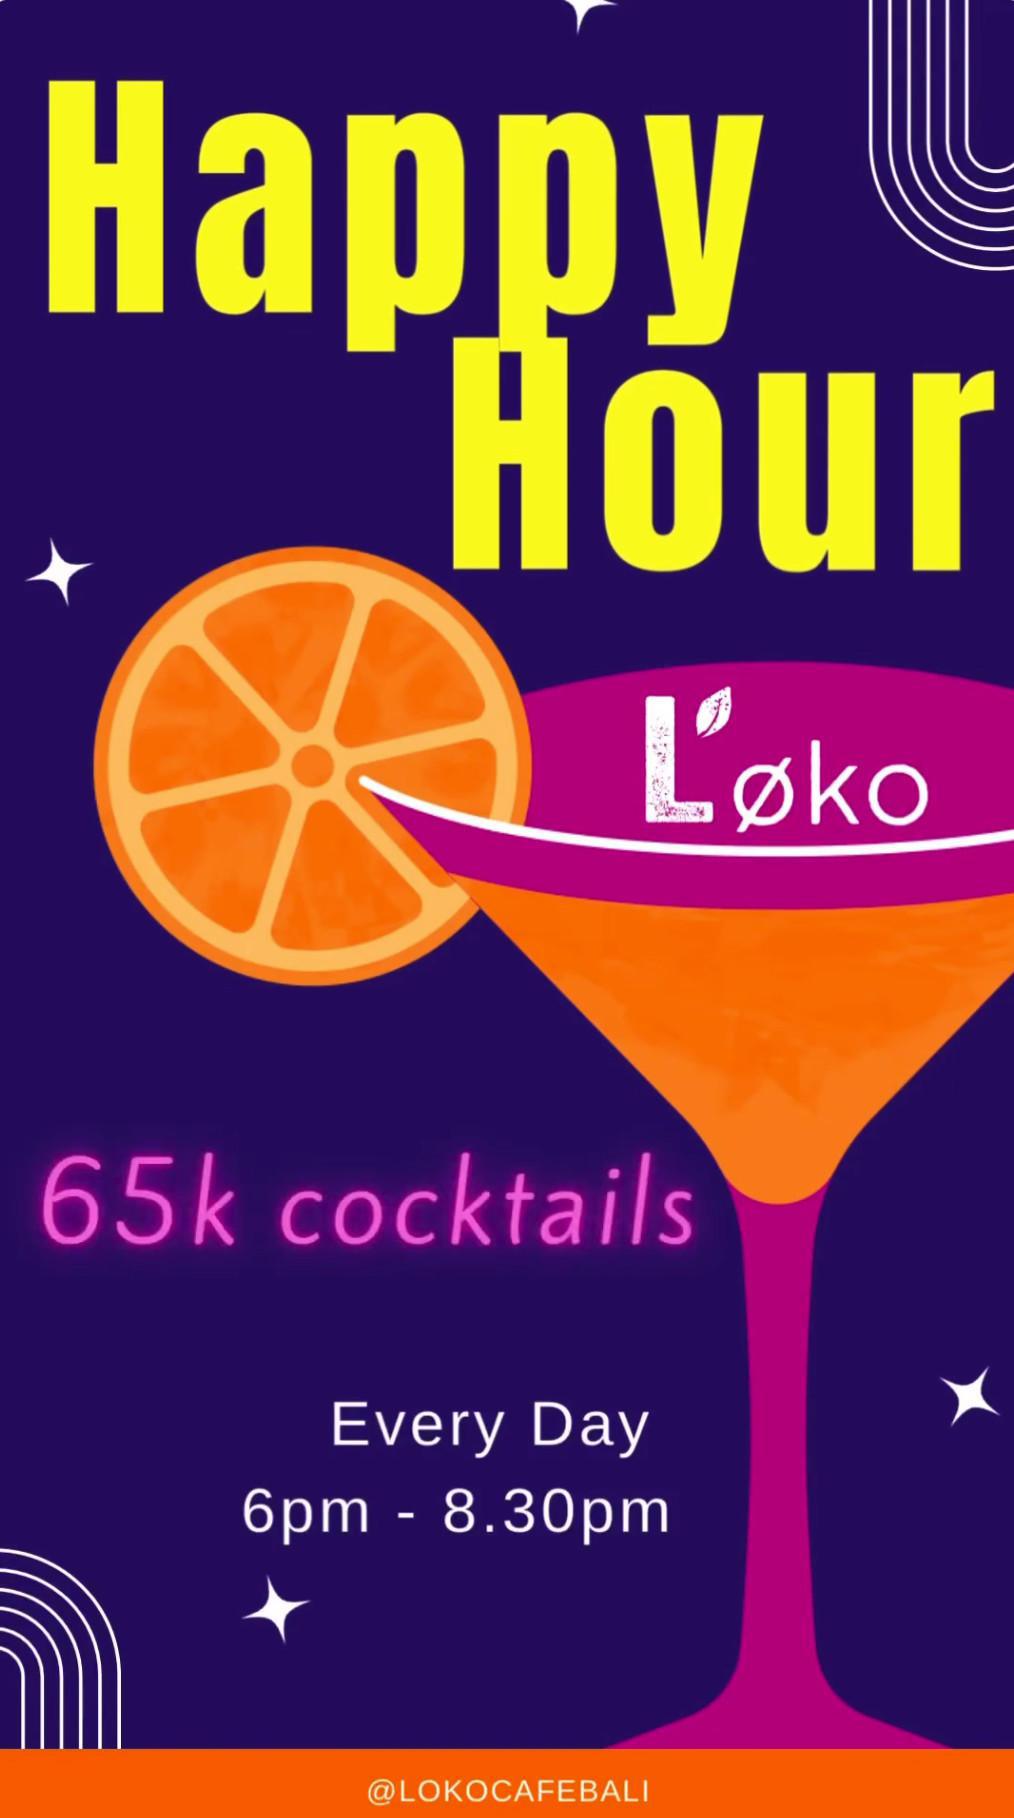 Happy Hour at Loko Cafe Bali, Daily.